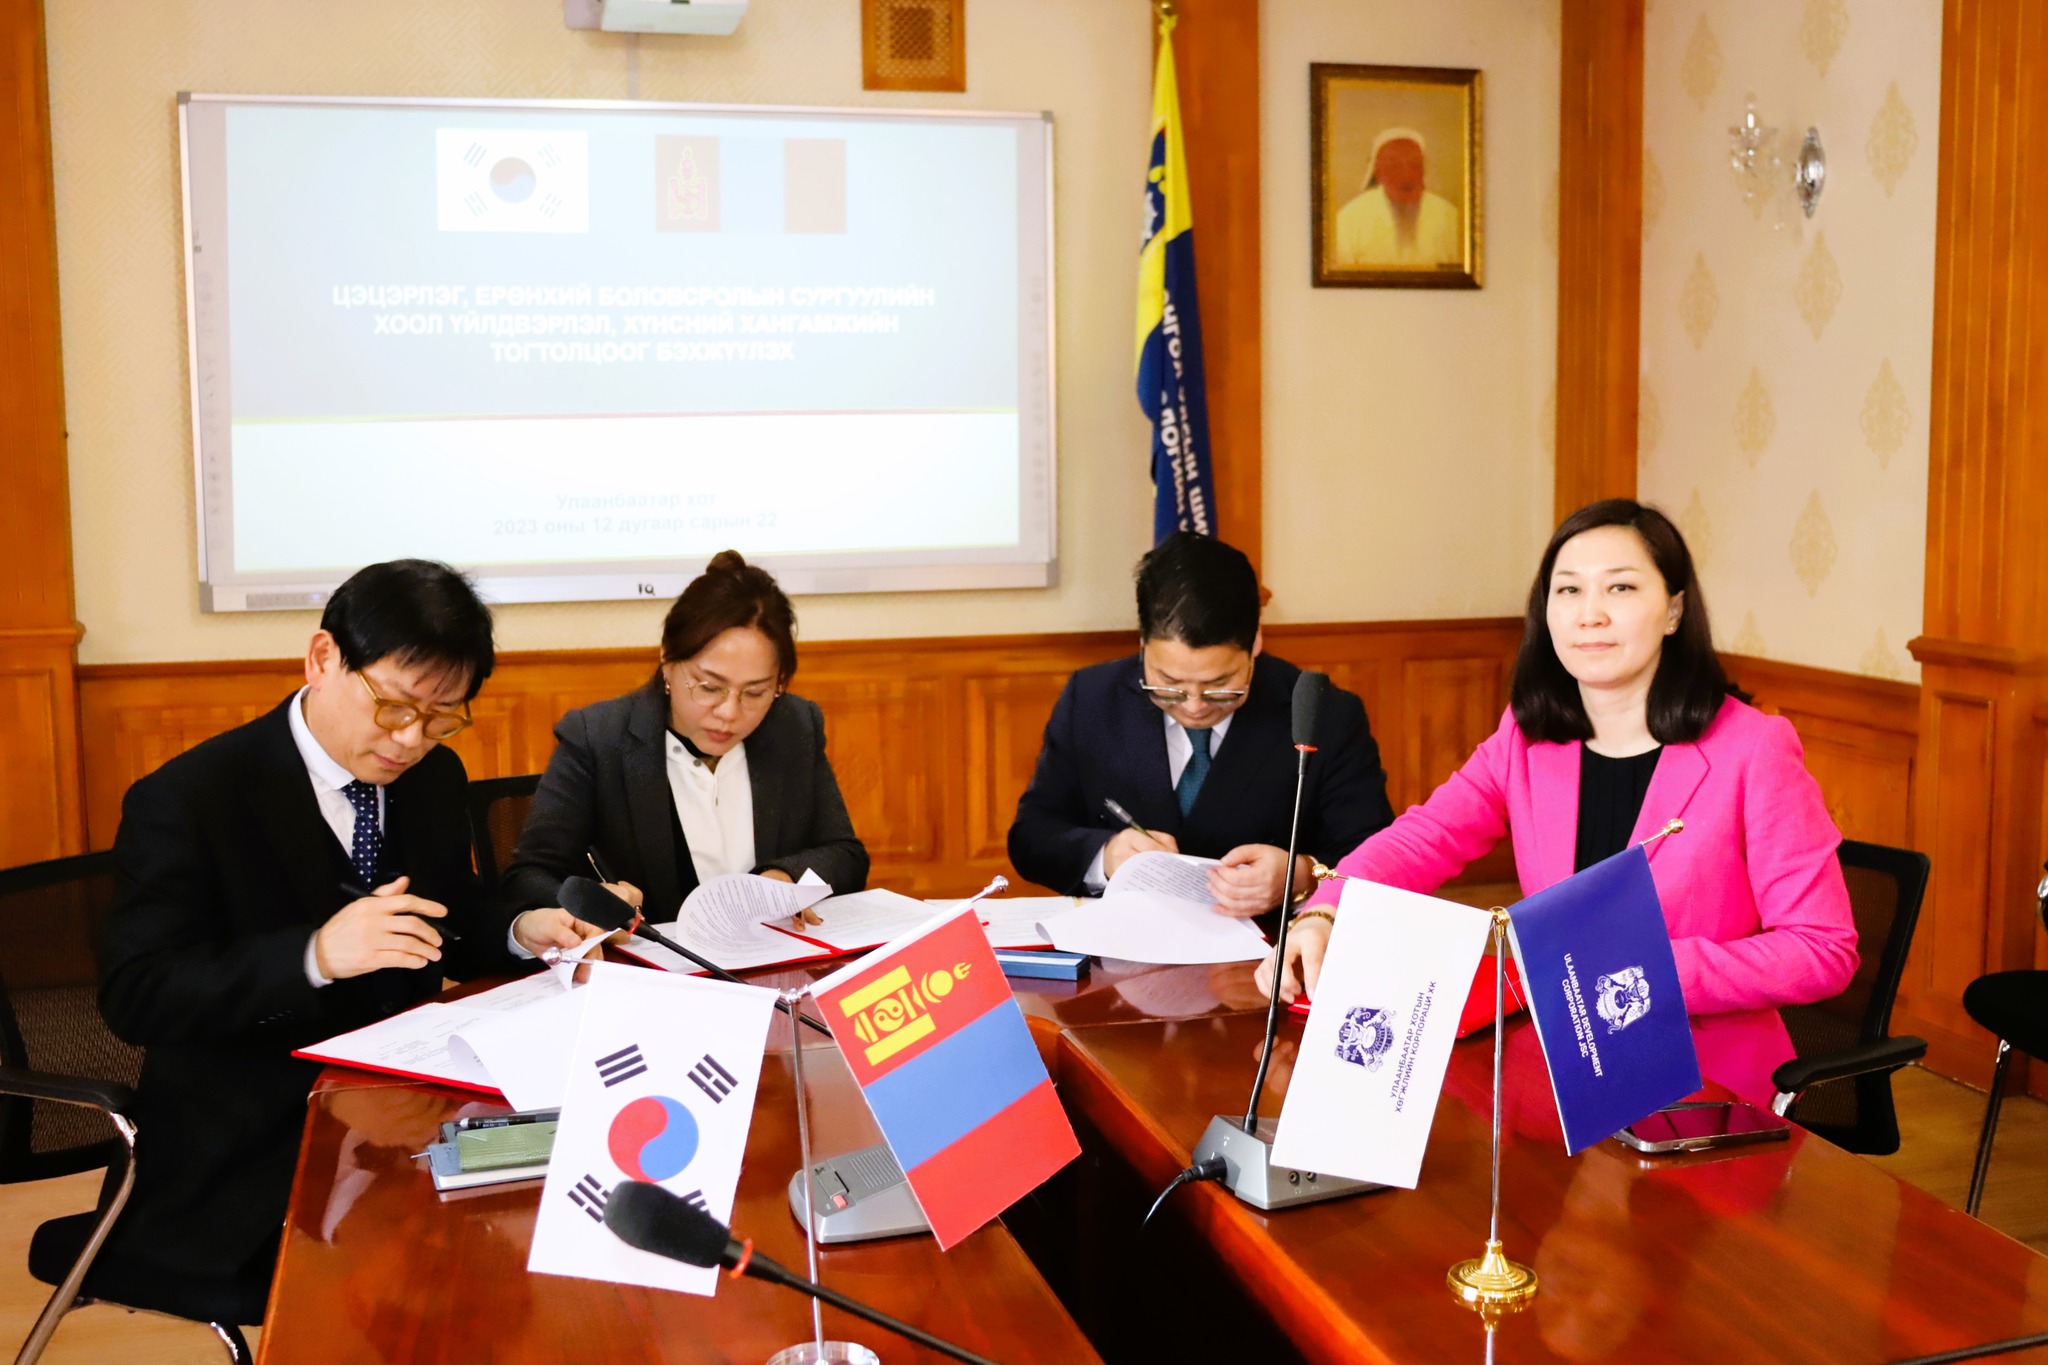 БНСУ-ын сайн туршлагыг Монгол улсын онцлогт тохирсон хэлбэрээр хэрэгжүүлнэ